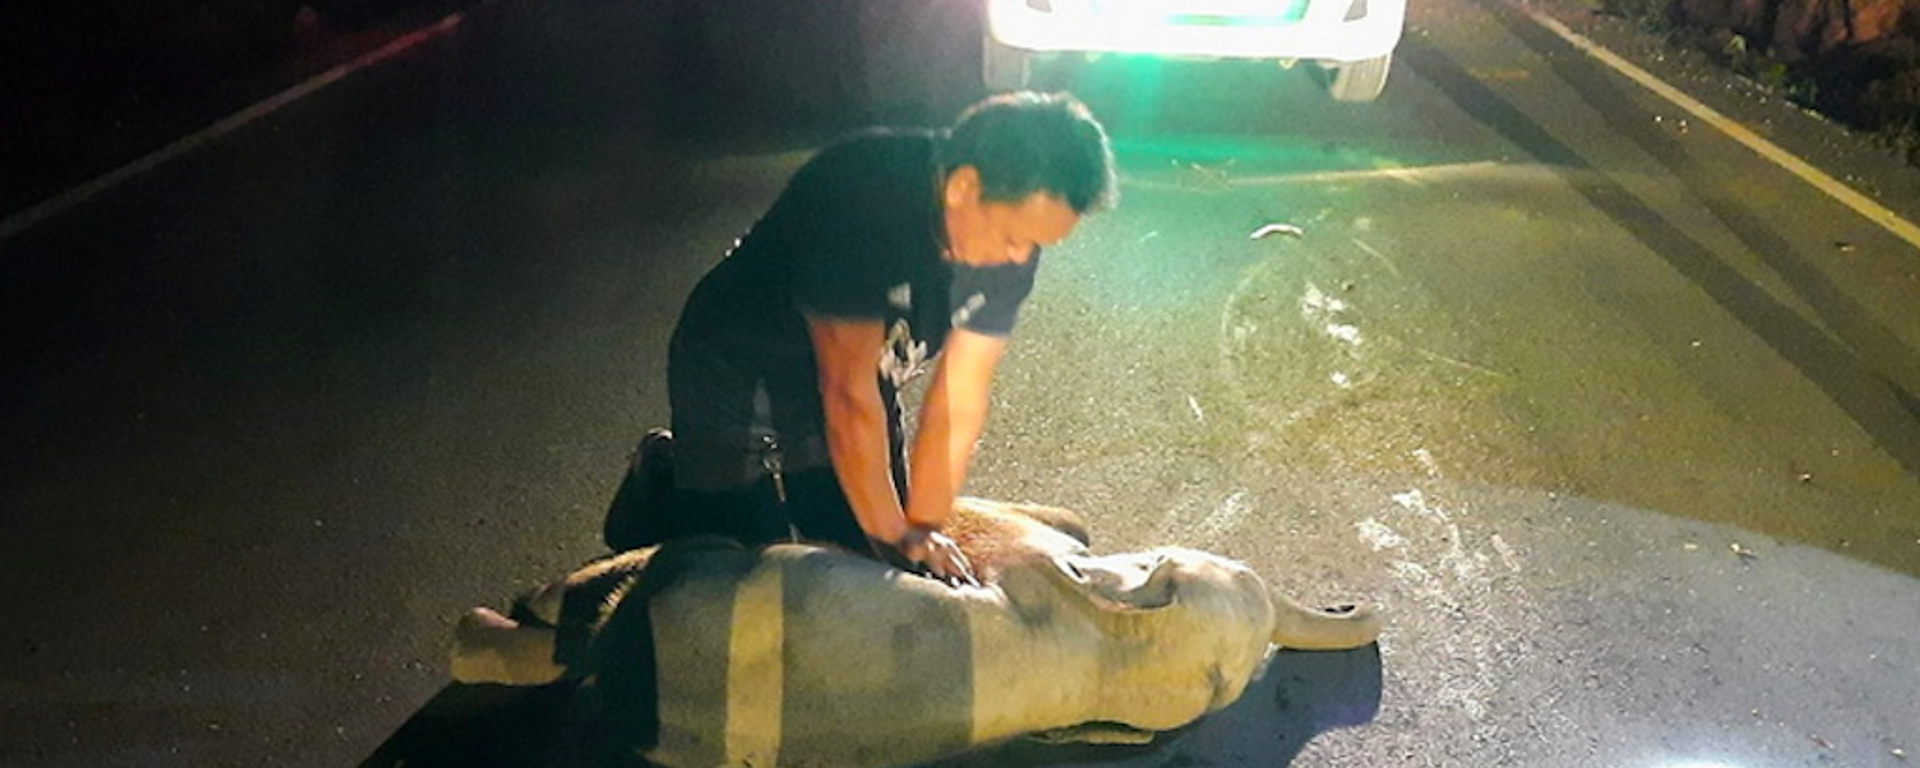 Bệnh nhân bất thường – nhân viên cứu hộ ở Thái Lan phải xoa bóp tim cho voi con bị xe máy đâm - Sputnik Việt Nam, 1920, 24.12.2020